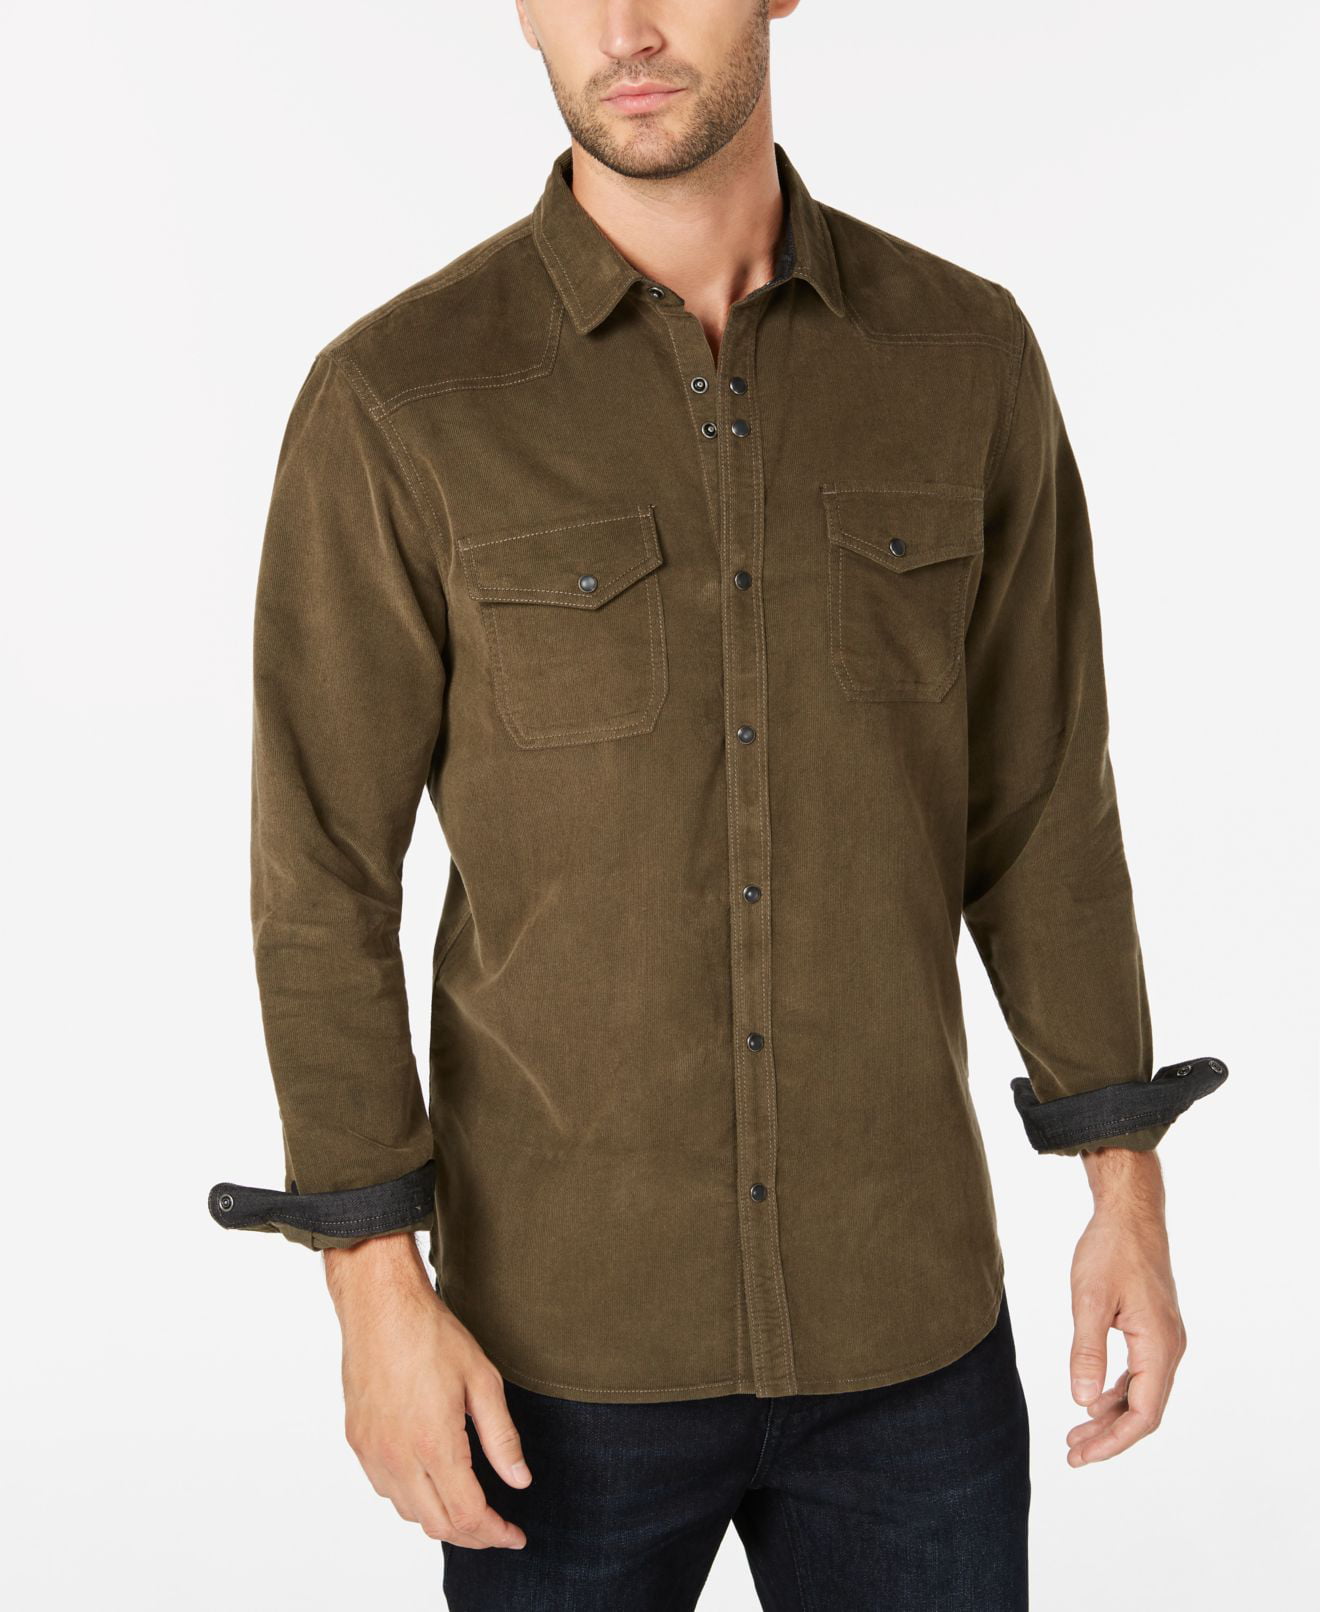 INC - Olive Men's Large Button Down Corduroy Shirt L - Walmart.com ...